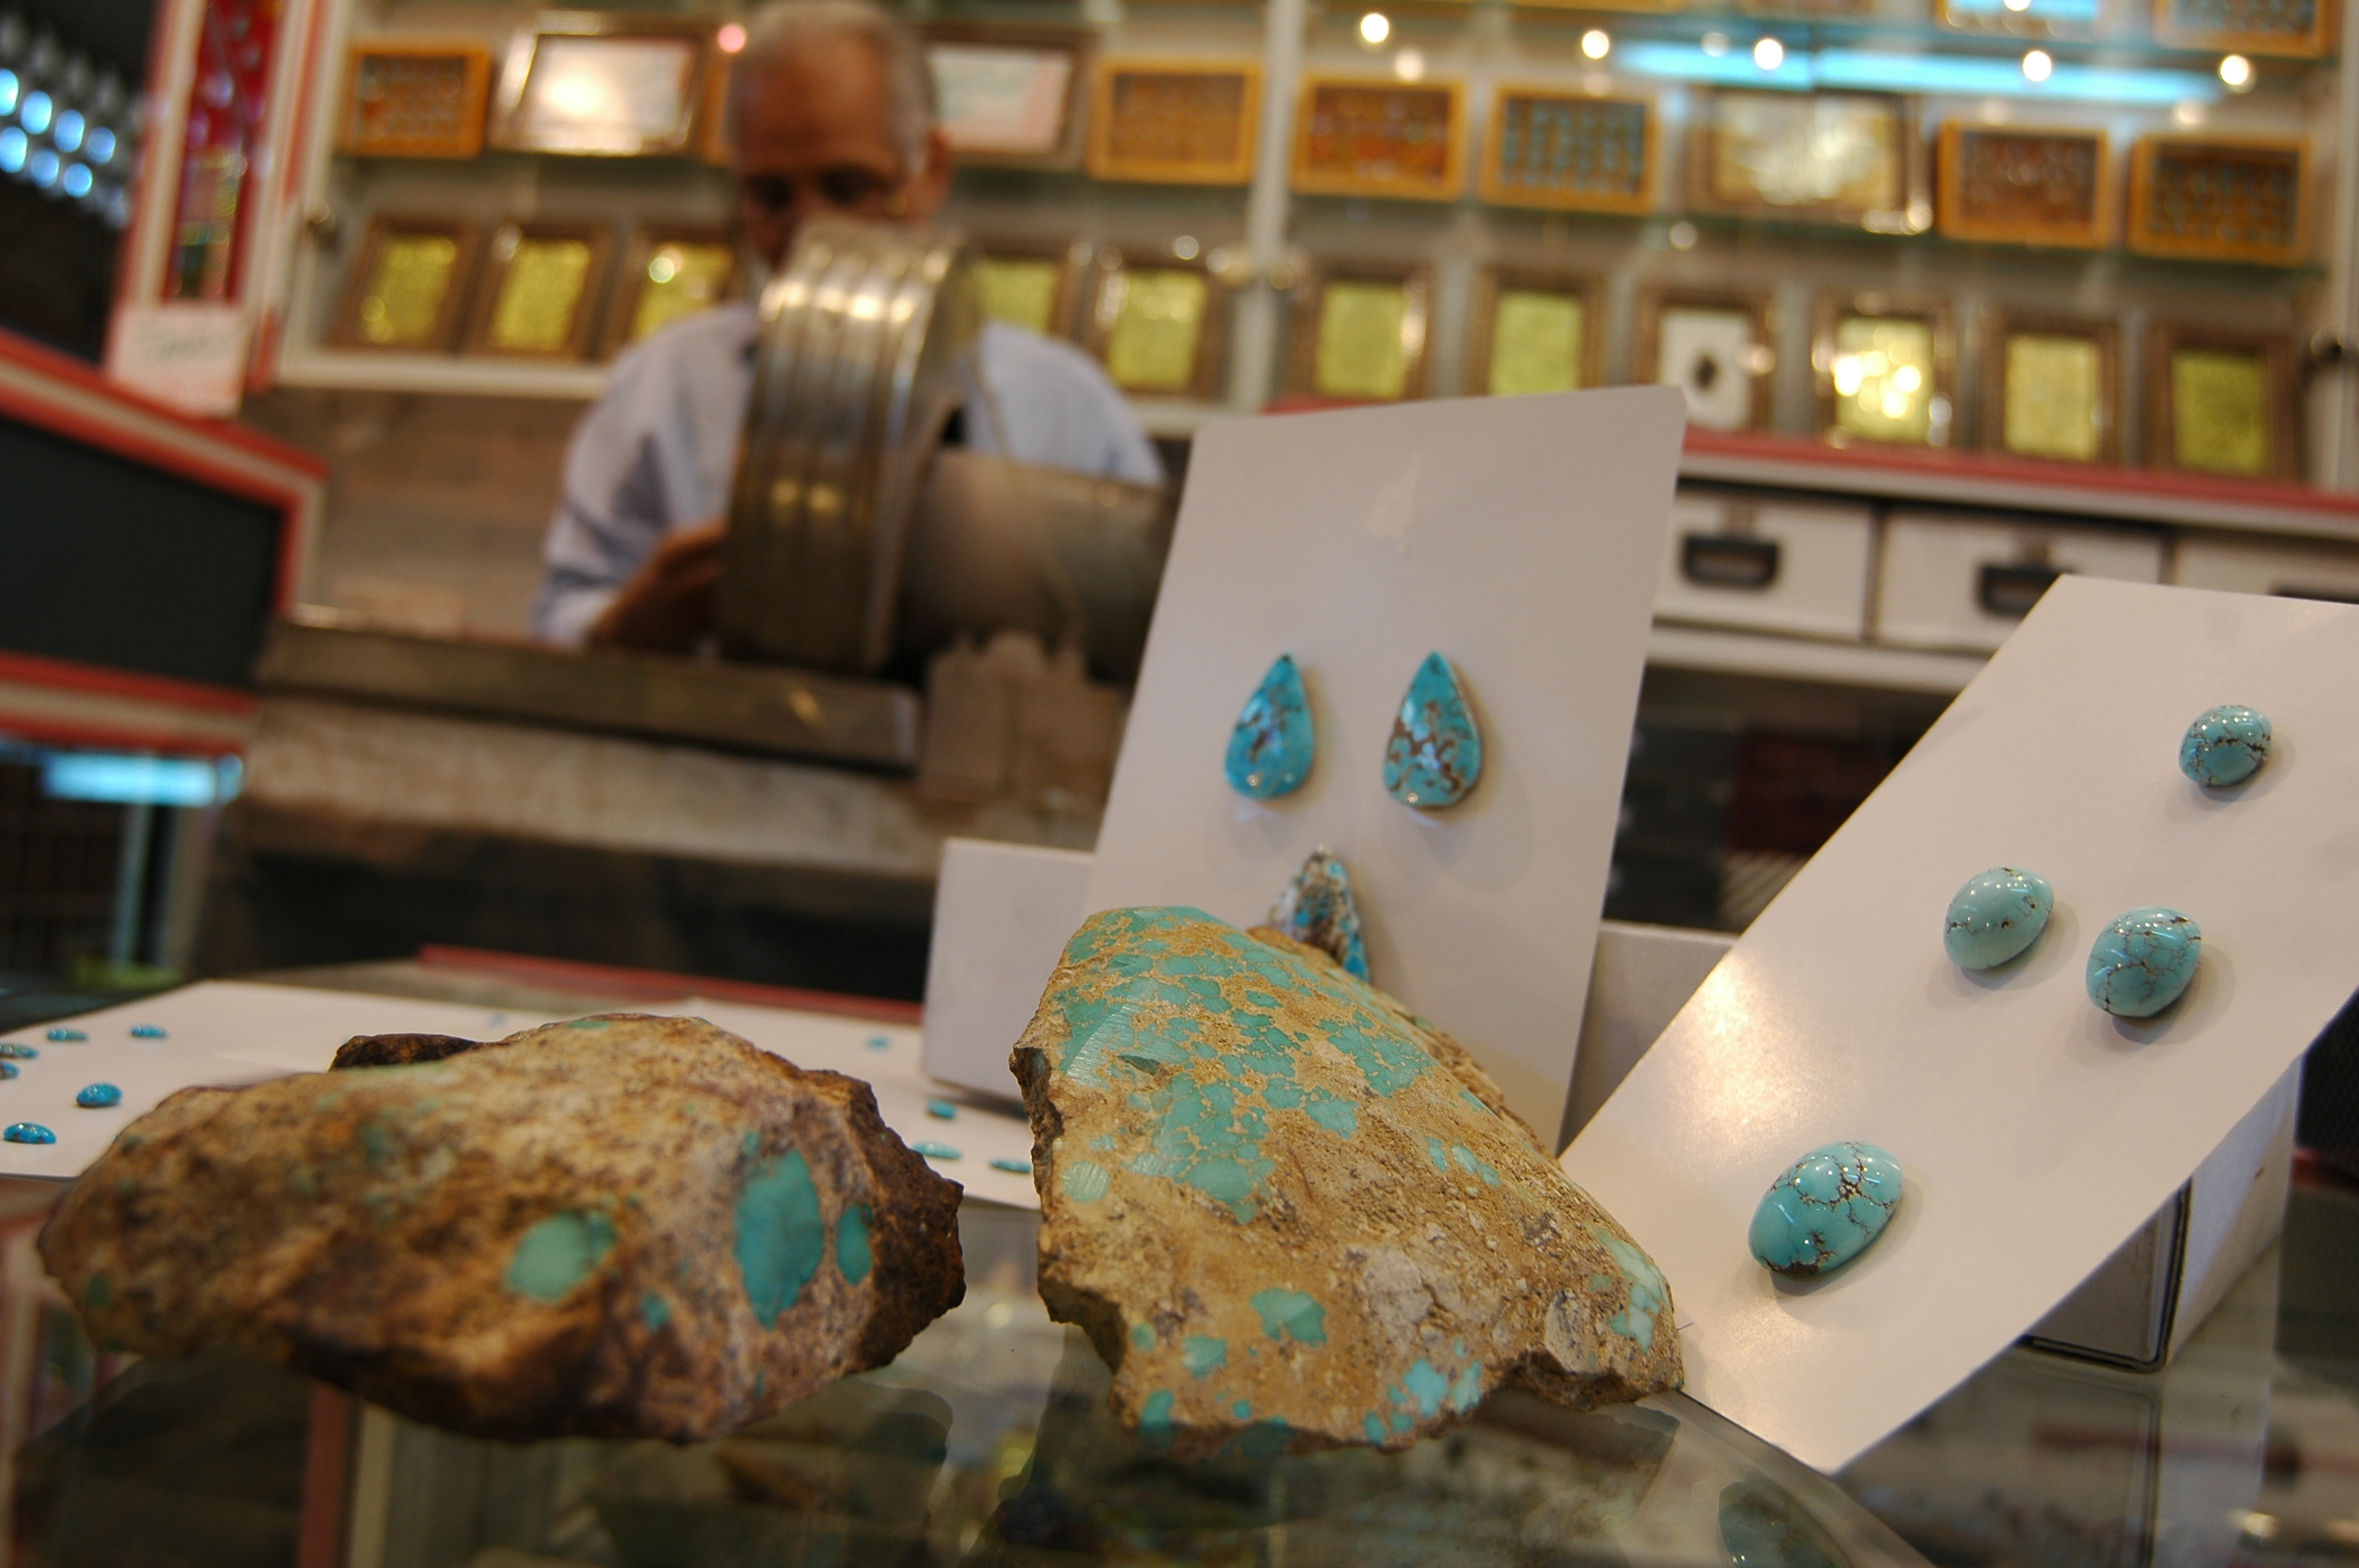 کیفیت جواهرات تولیدی در مشهد با هیچ جای دنیا قابل قیاس نیست